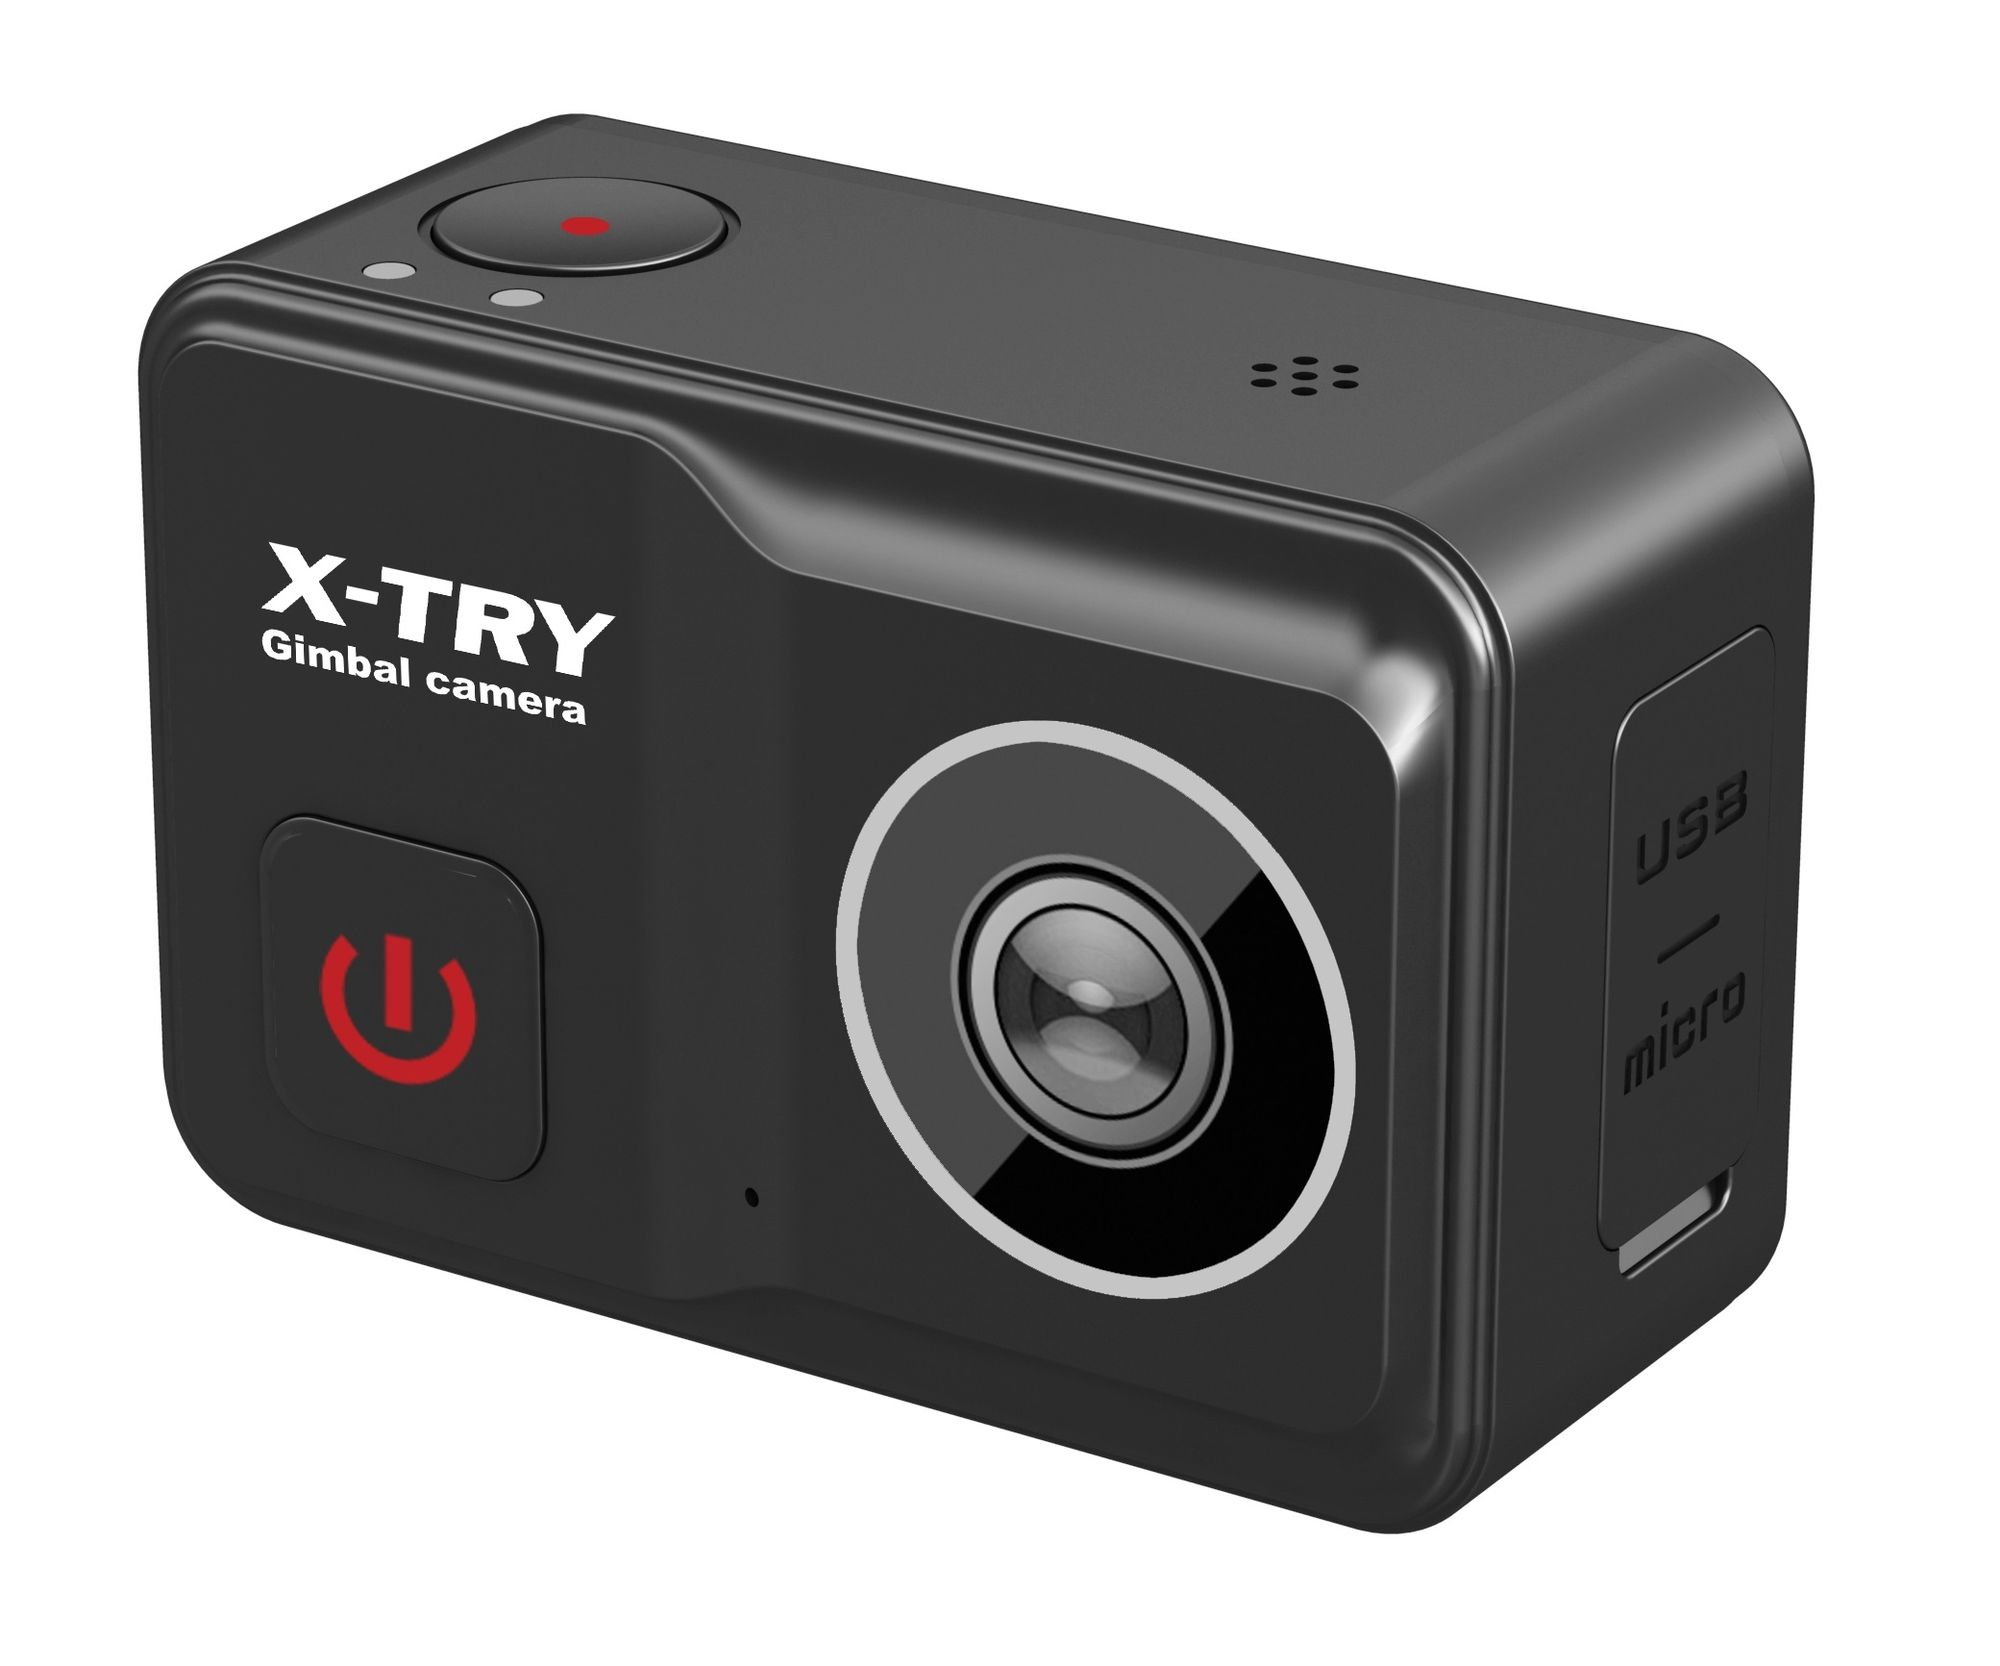 Экшн камера X-Try XTC502 Gimbal Real 4K/60FPS WDR Wi-Fi Power экшн камера x try xtc400 real 4k 60fps wdr wi fi standart